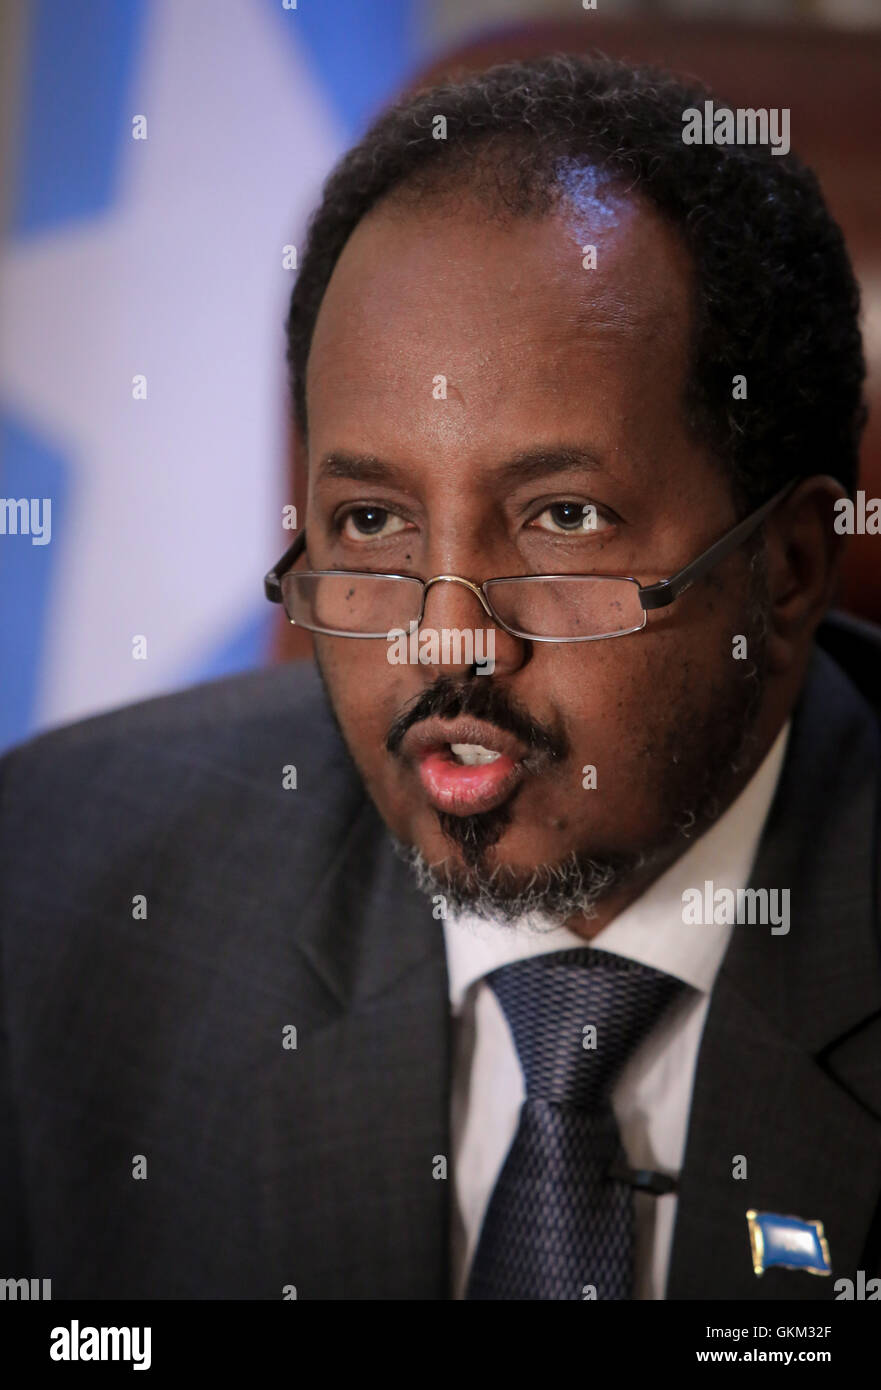 La Somalie, Mogadiscio : en photographie prise et publiée par l'Union africaine et l'équipe de support d'information des Nations Unies 19 avril 2013, le Président somalien Hassan Cheikh Mohamoud est vu dans son bureau à l'intérieur de la Villa Somalia, le complexe qui abrite le gouvernement somalien dans la capitale Mogadiscio. Énumérés dans la liste du Time des 100 personnes les plus influentes, Mohamud est président de la Somalie's premier gouvernement démocratiquement élu après deux décennies de guerre civile et de conflit l'agitation dans la Corne de l'Afrique nation. IST UA-ONU PHOTO / STUART PRICE. Banque D'Images